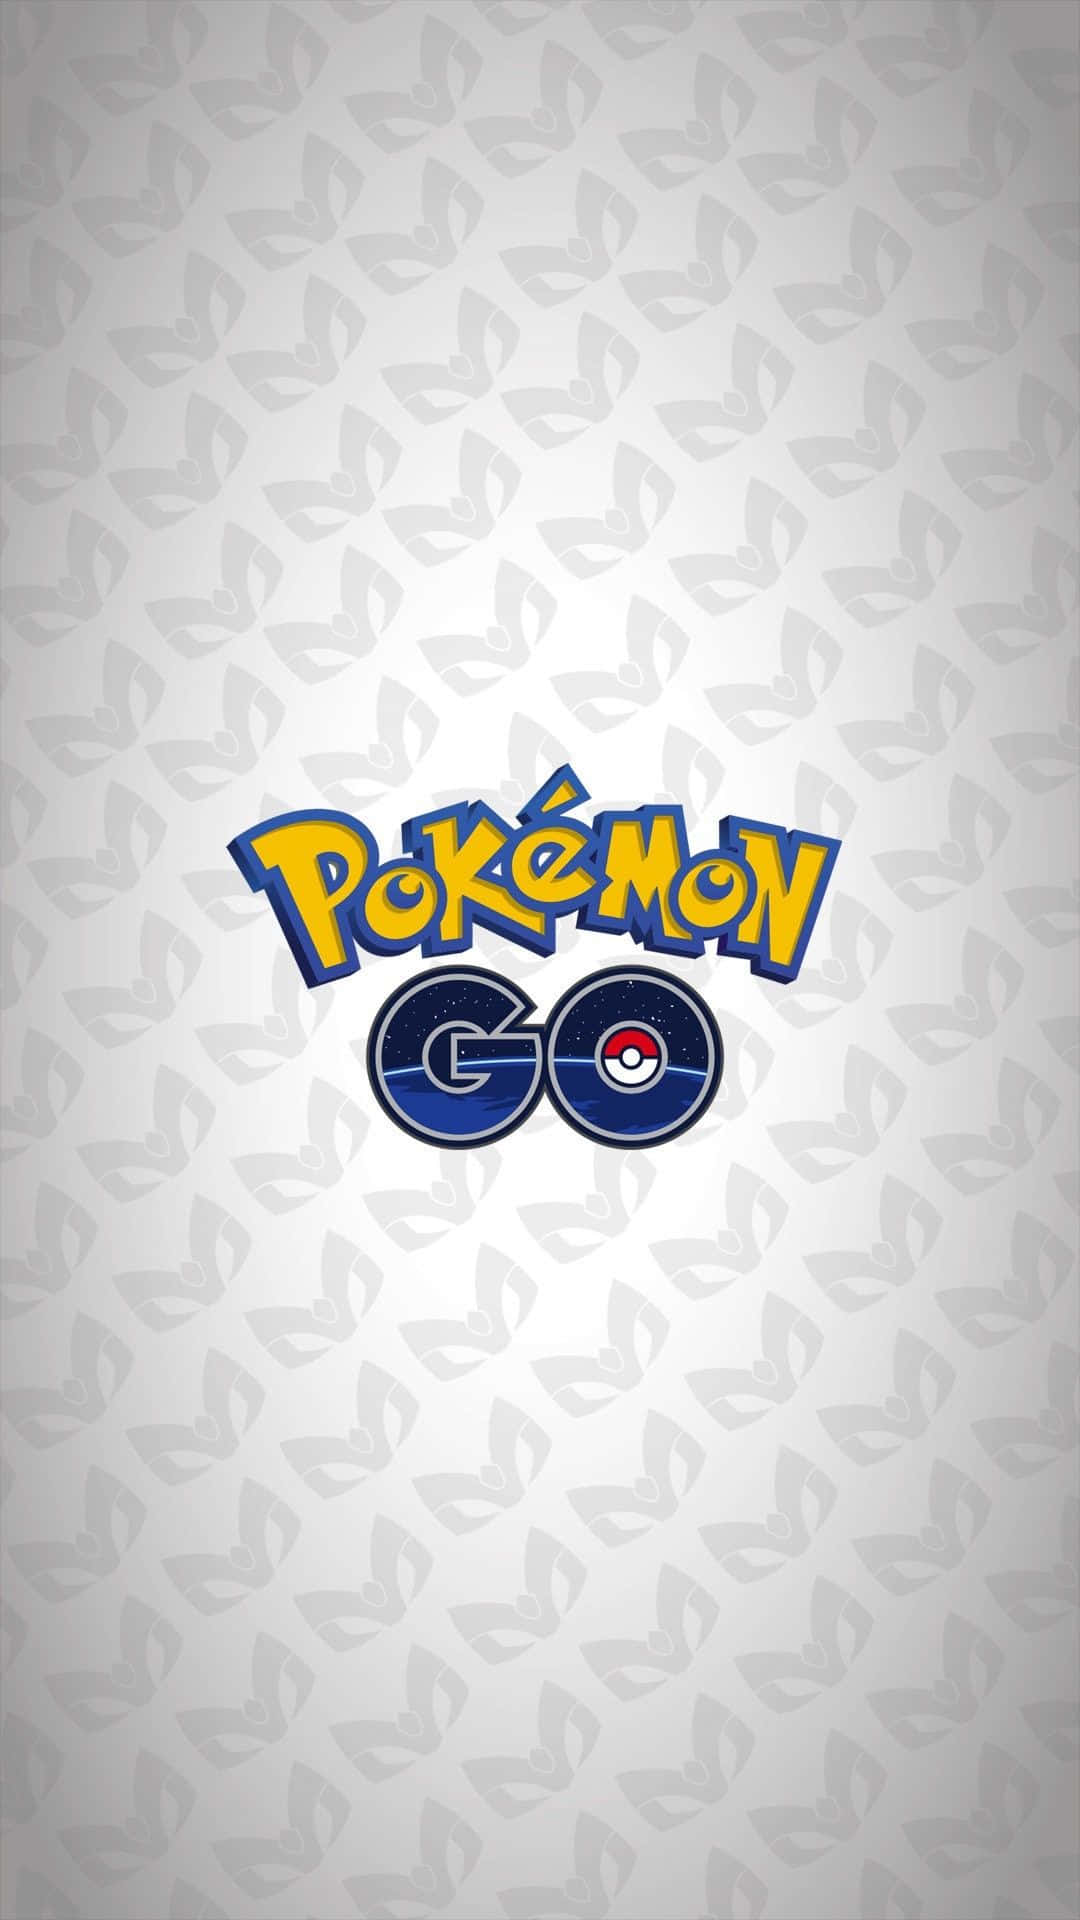 Logoet fra Pokémon Go fungerer som baggrundsbillede. Wallpaper